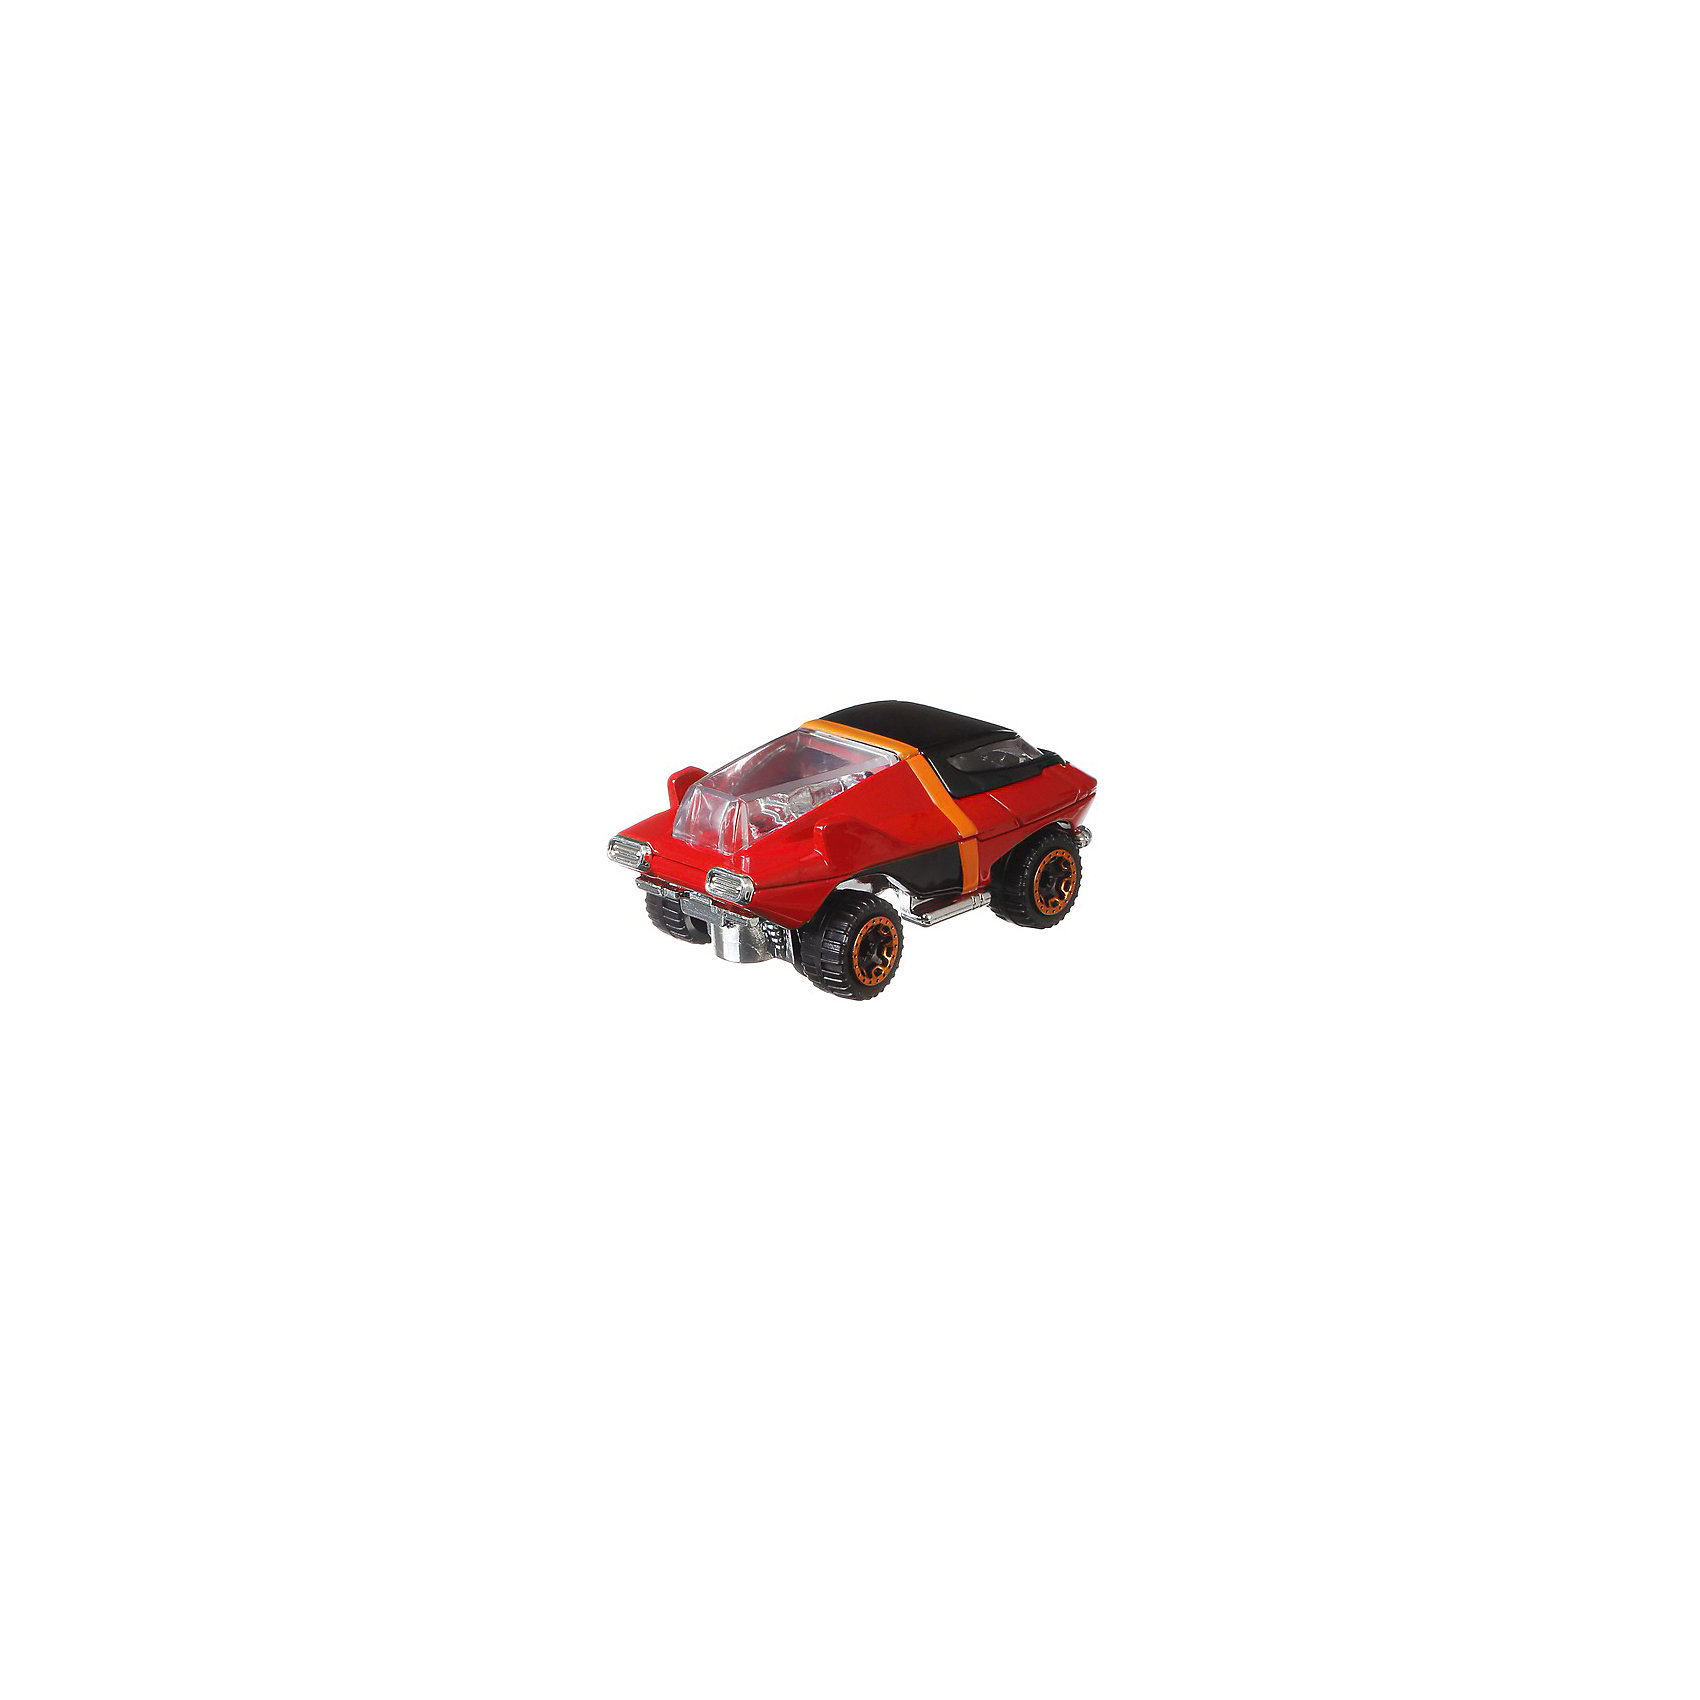 Премиальная машинка Hot Wheels Персонажи Disney Мистер Исключительный Mattel 16693512